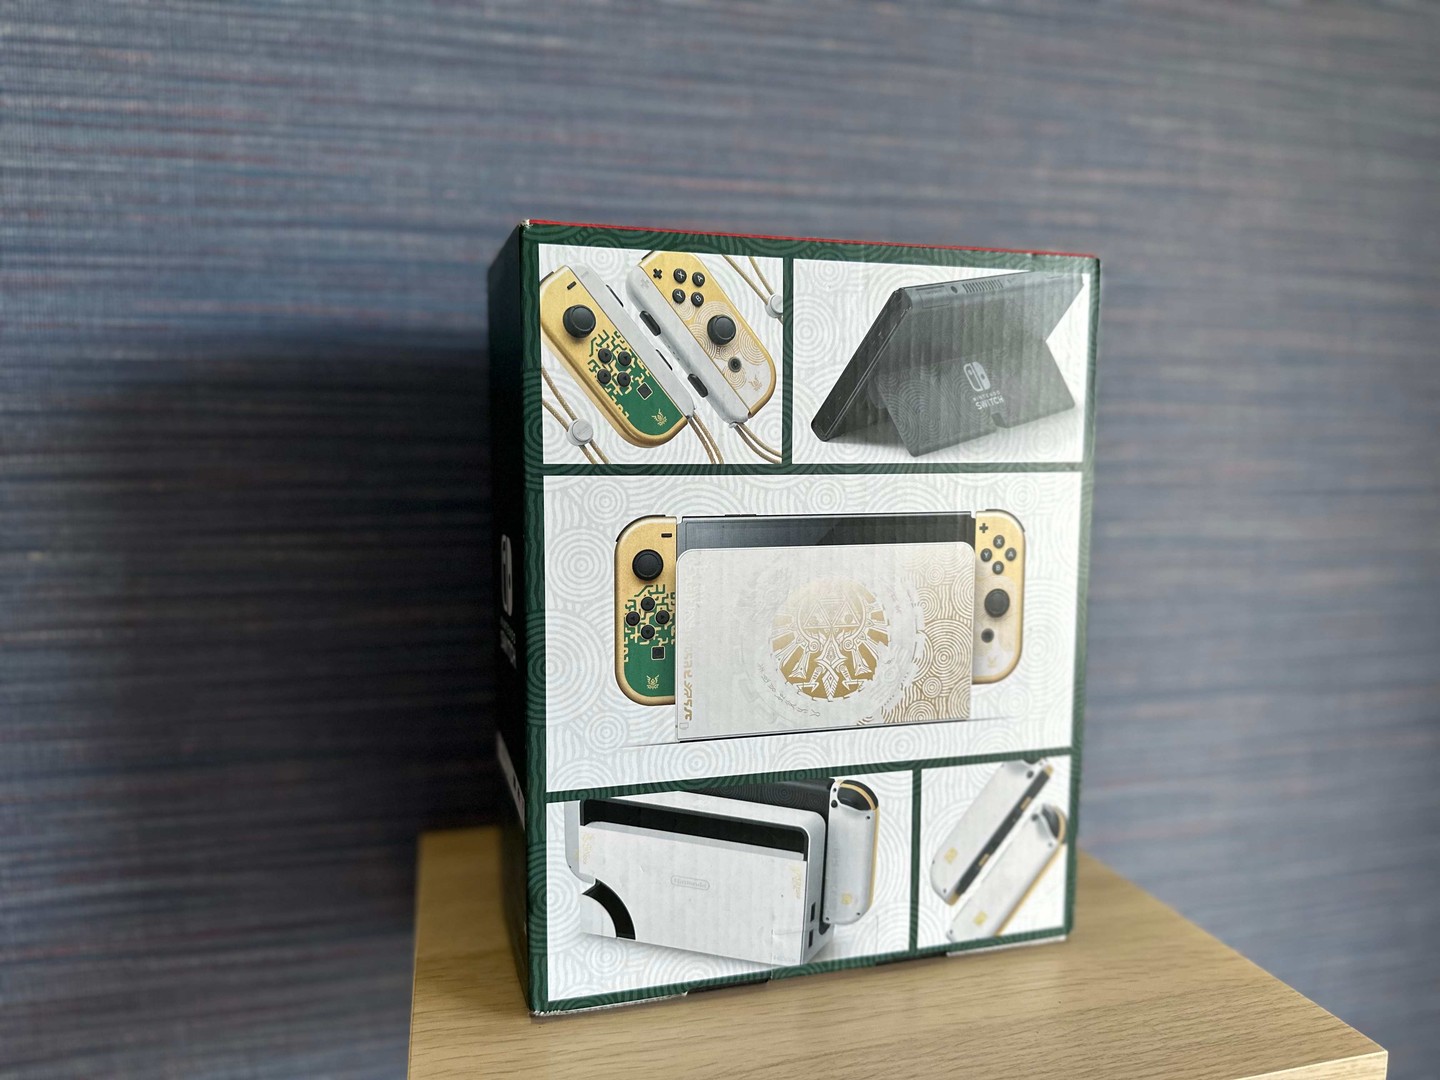 consolas y videojuegos - Vendo Consola Nintendo Switch OLED Zelda Edition Nuevos , Garantía $ 20,500 NEG 1